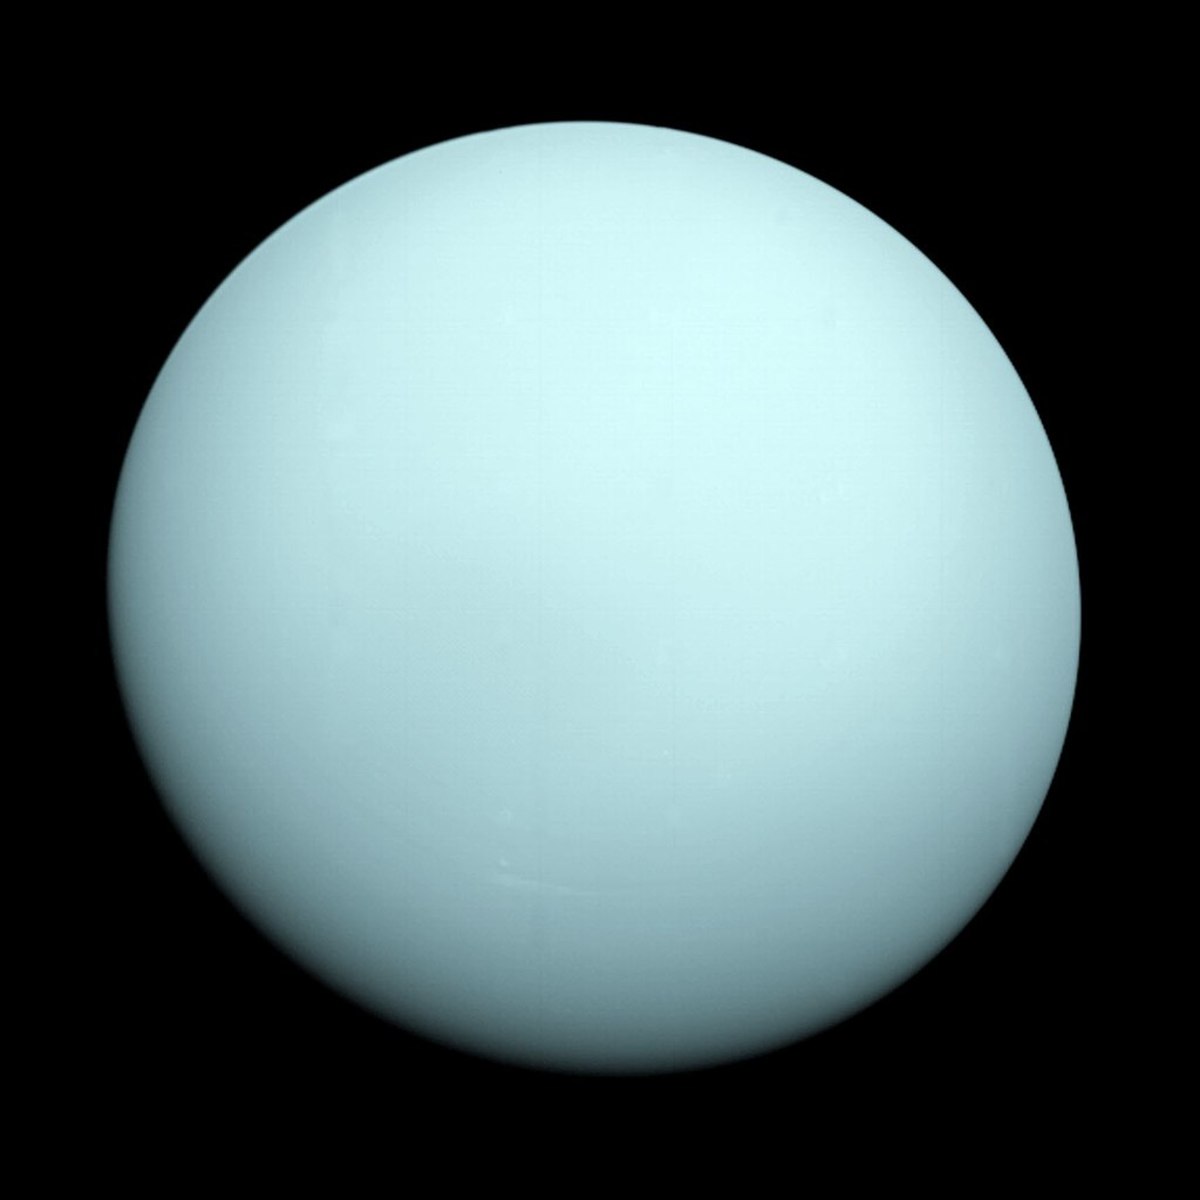 Up-close image of Uranus, taken by Voyager 2 in 1986.